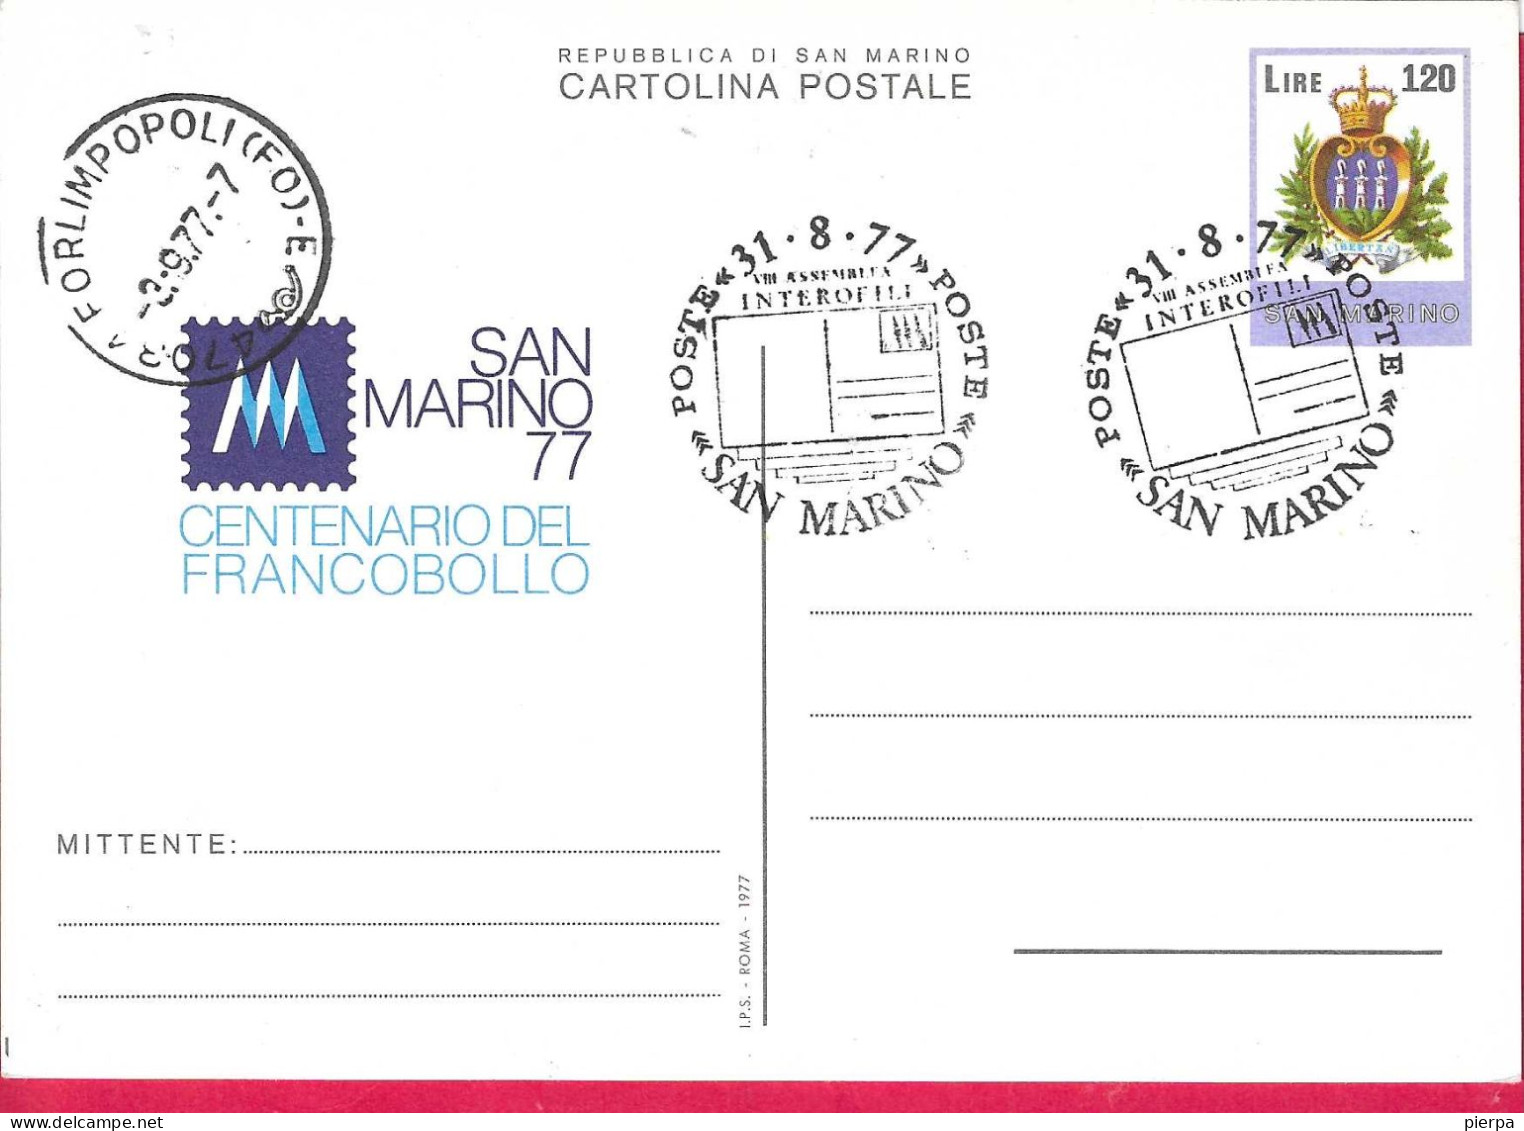 SAN MARINO - CARTOLINA POSTALE CENTENARIO FRANCOBOLLO CON ANNULLO F.D.C. *31-8-77* (INT. 37) - Interi Postali